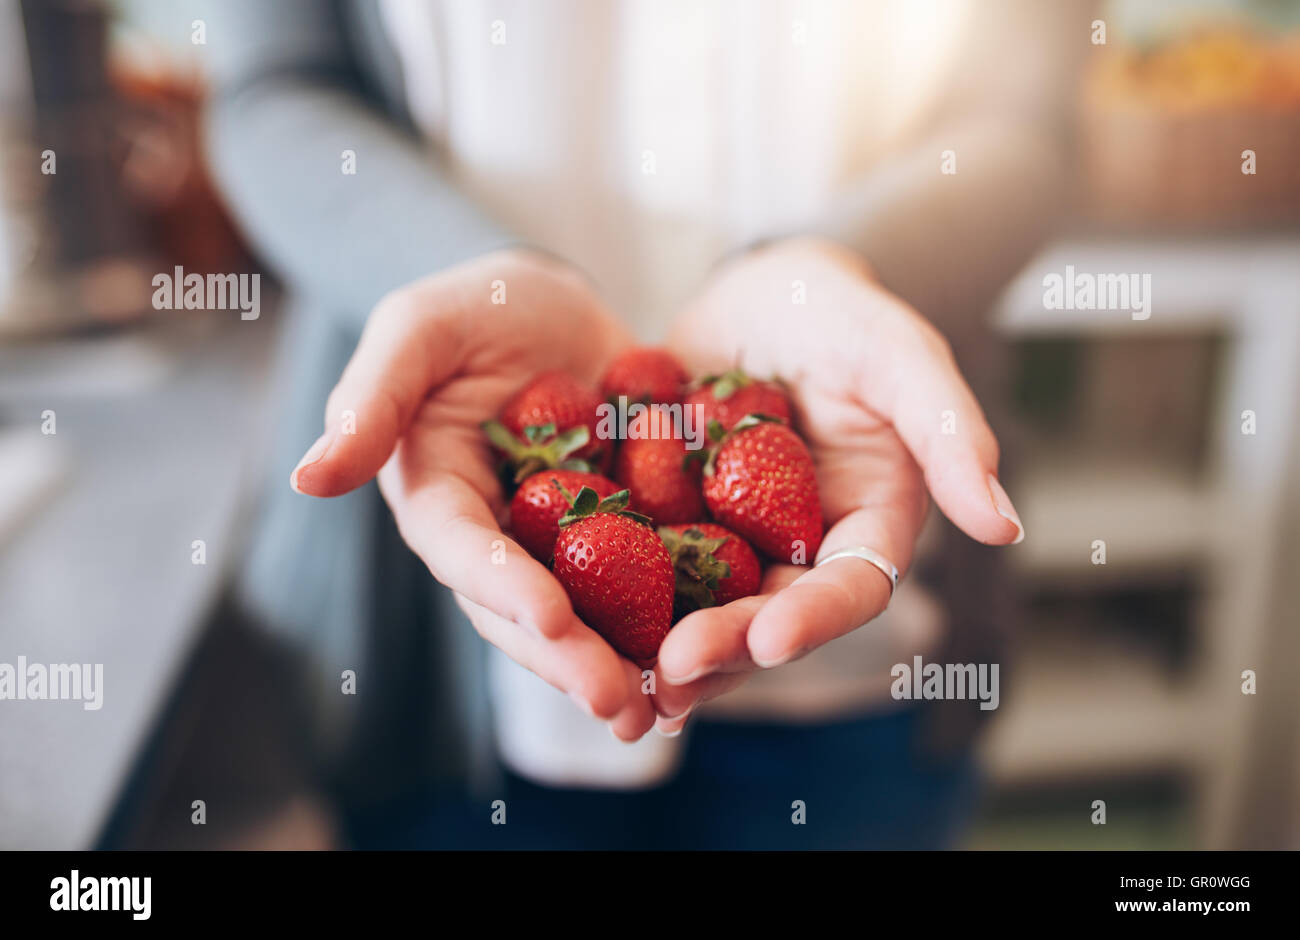 Abgeschnitten Bild eines Weibes Hände halten ein paar Erdbeeren. Frau hält eine Handvoll frische Erdbeeren. Stockfoto